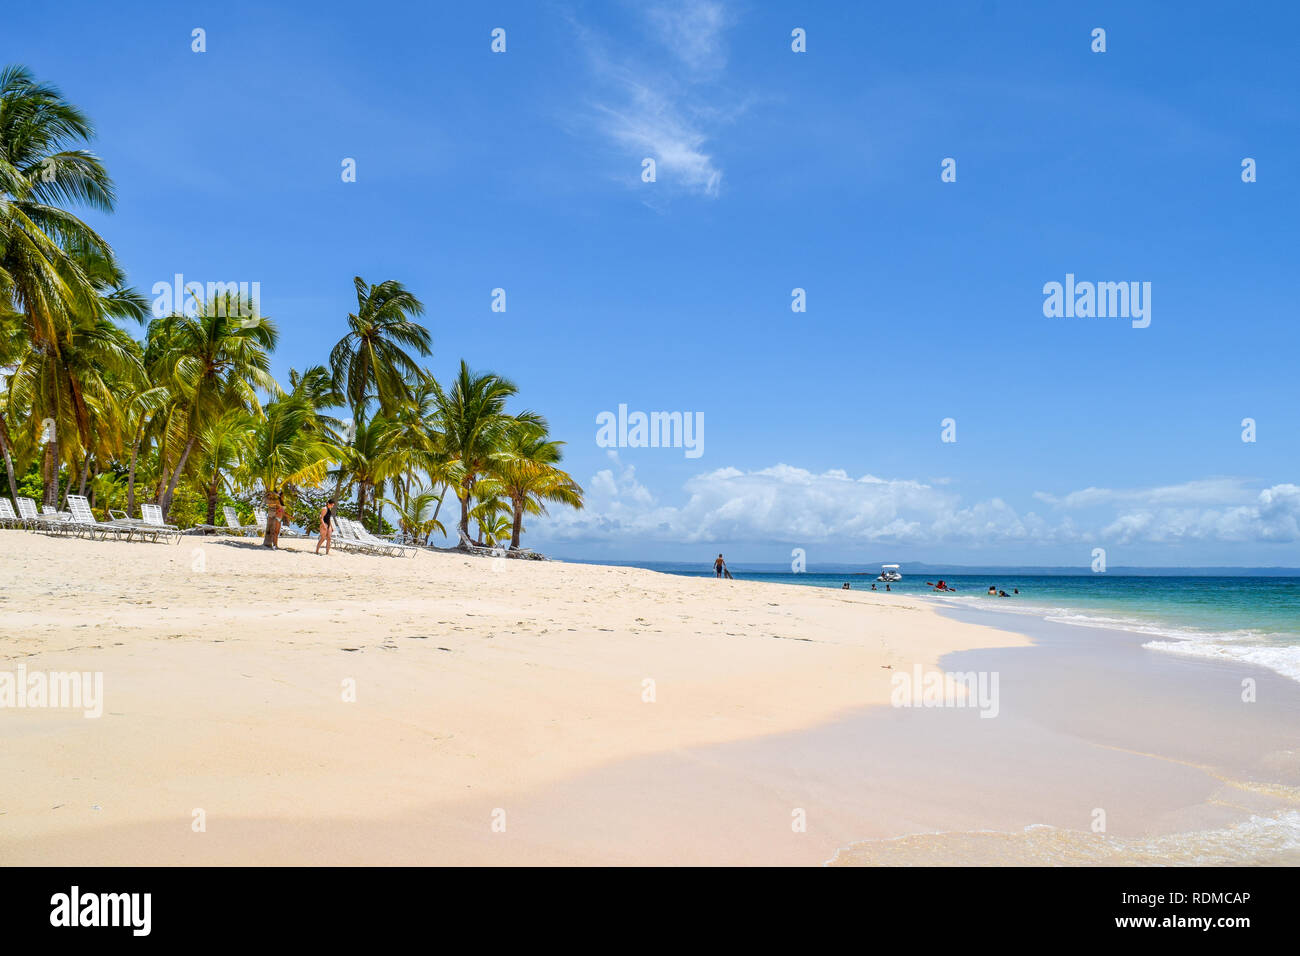 Île tropicale dans la mer des caraïbes avec palmiers, sable blanc, mer turquoise et bleu ciel, certains touristes se détendre dans l'océan et sur la plage Banque D'Images